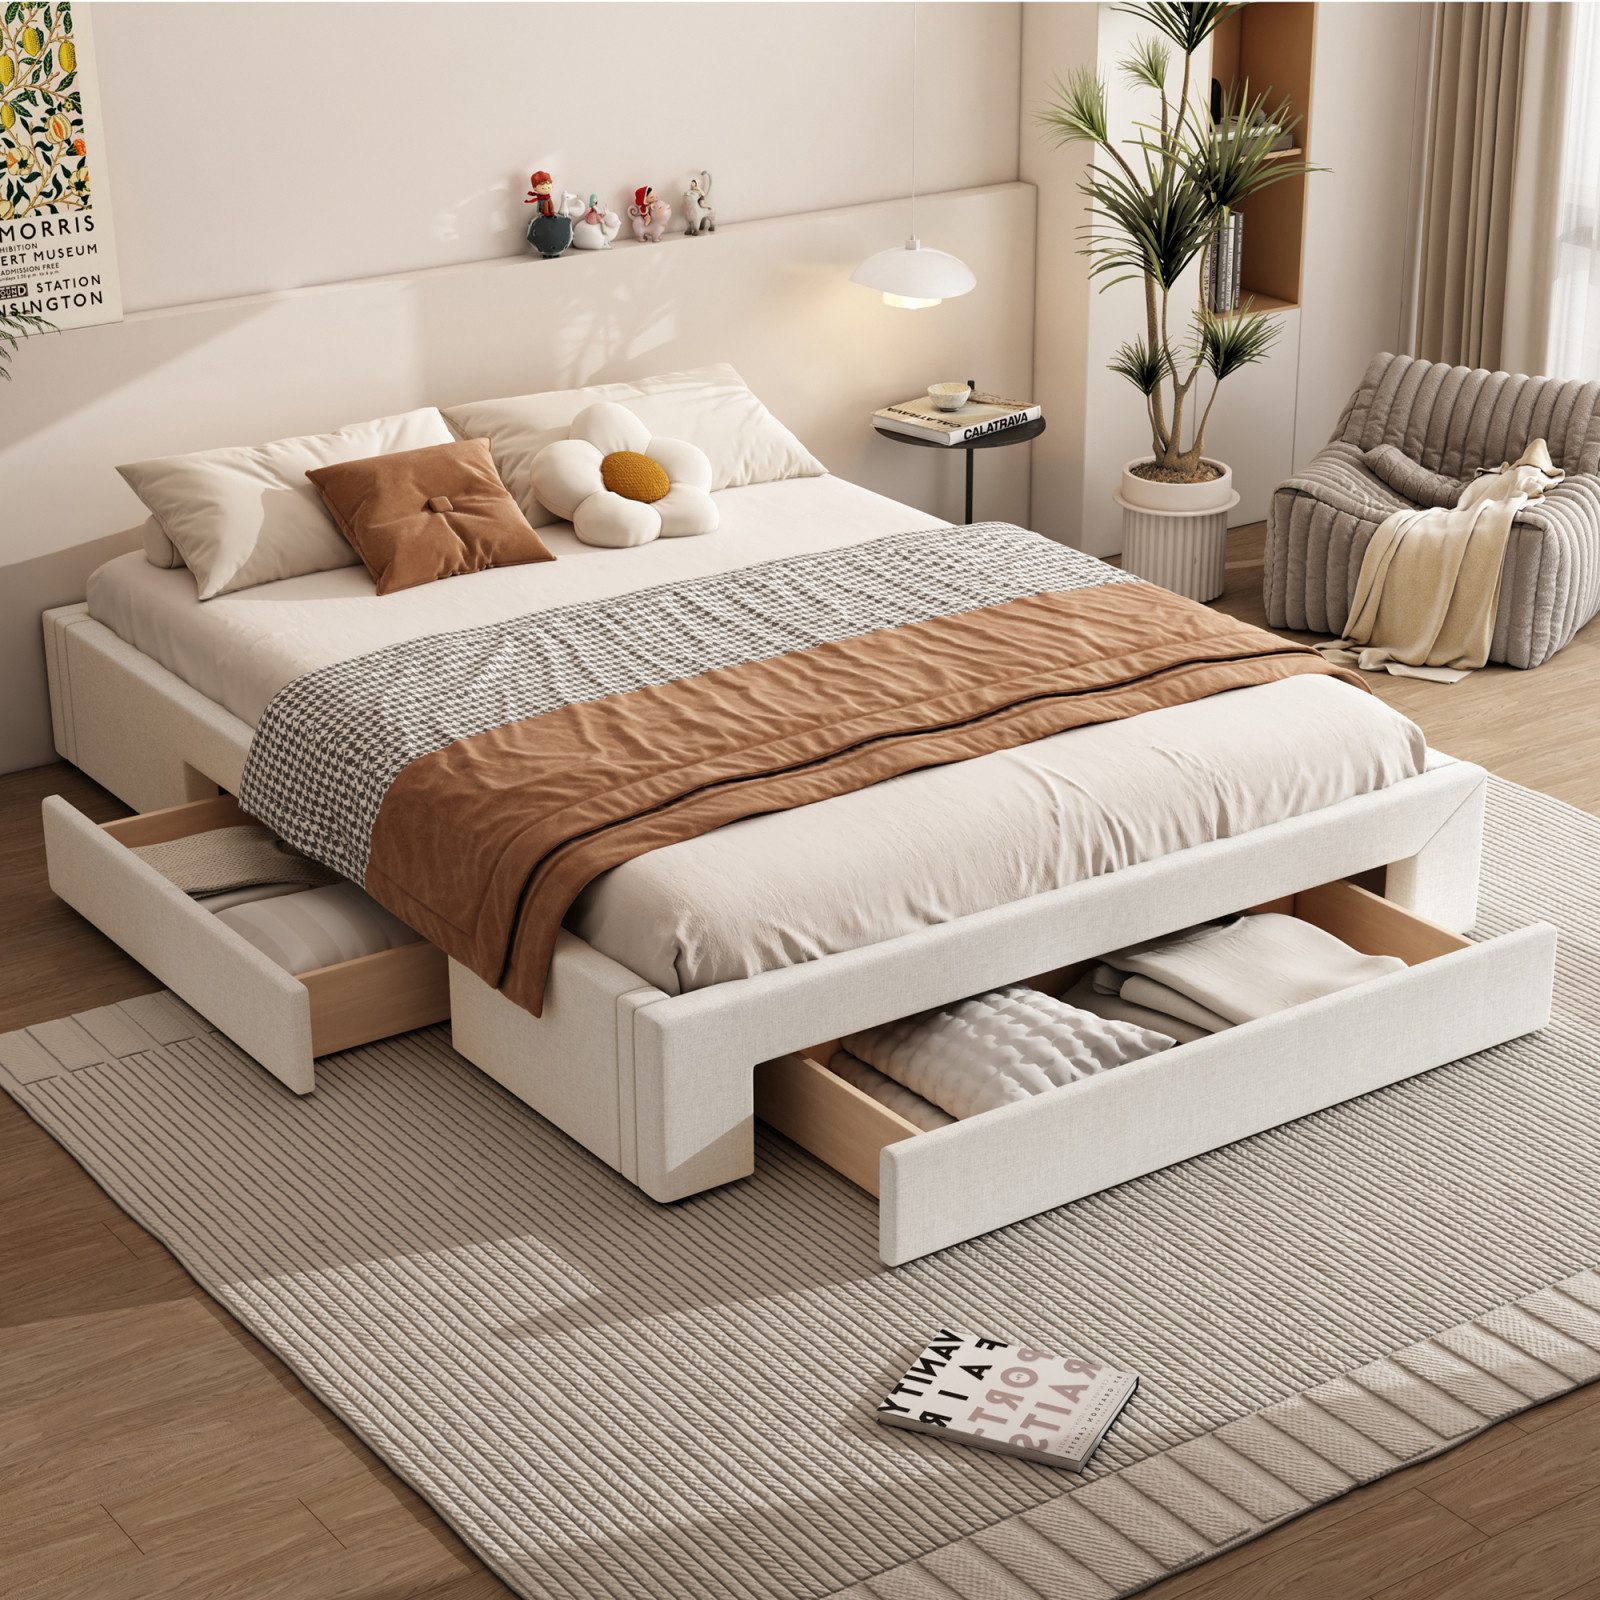 FUROKOY Polsterbett Plattform Bett ohne Kopfteil mit 3 Schubladen, (große Kapazität Lagerung Bettwäsche Bett), Doppelbett schmutzabweisend Leinen 140x200cm, Beige